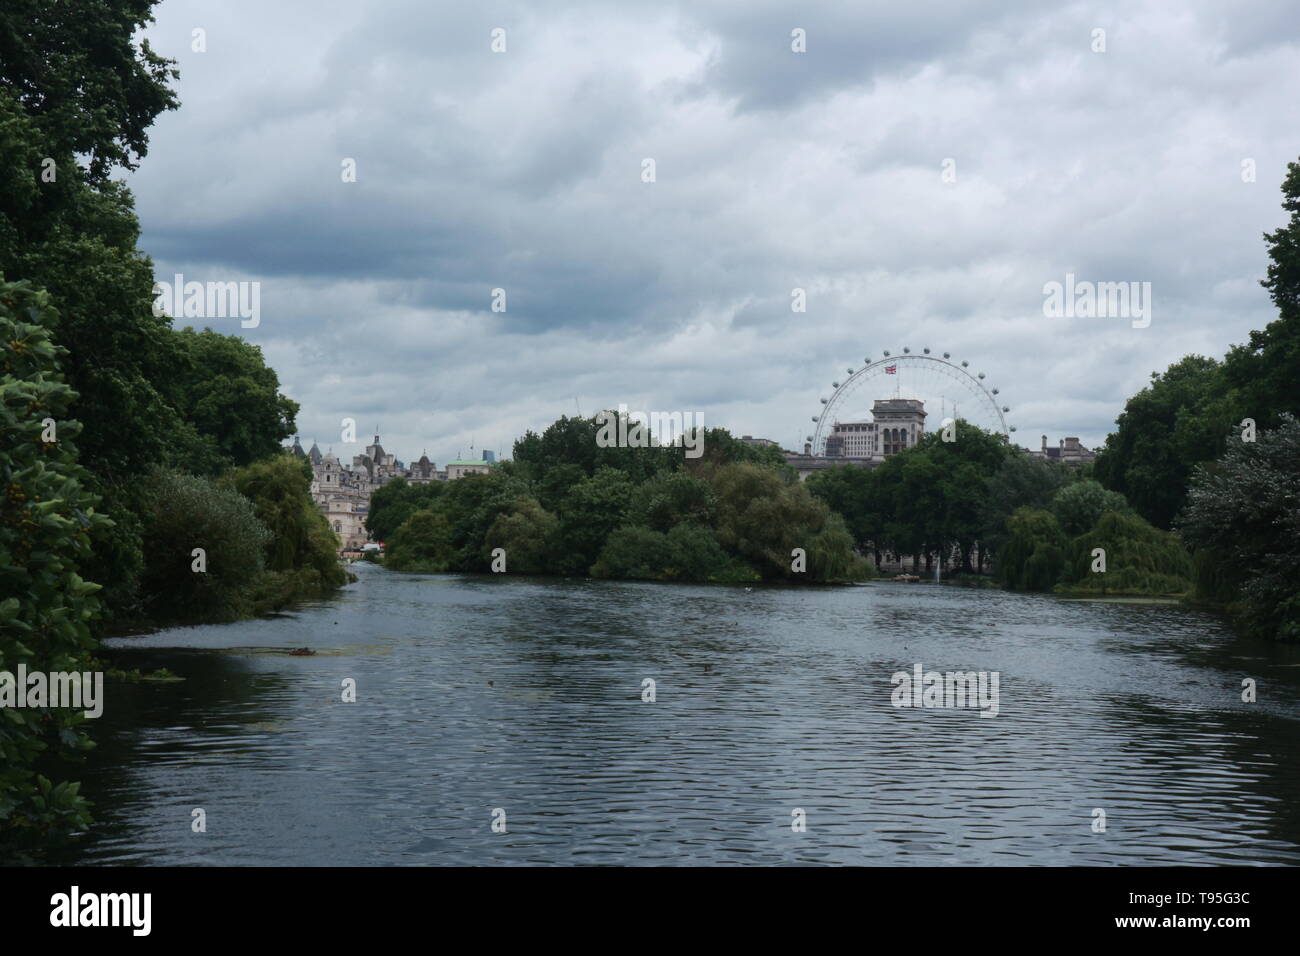 Le Les jardins de Buckingham Palace, Londres avec le London Eye et autres bâtiments au loin. En outre, il y a un lac dans l'avant-plan et d'arbres. Banque D'Images